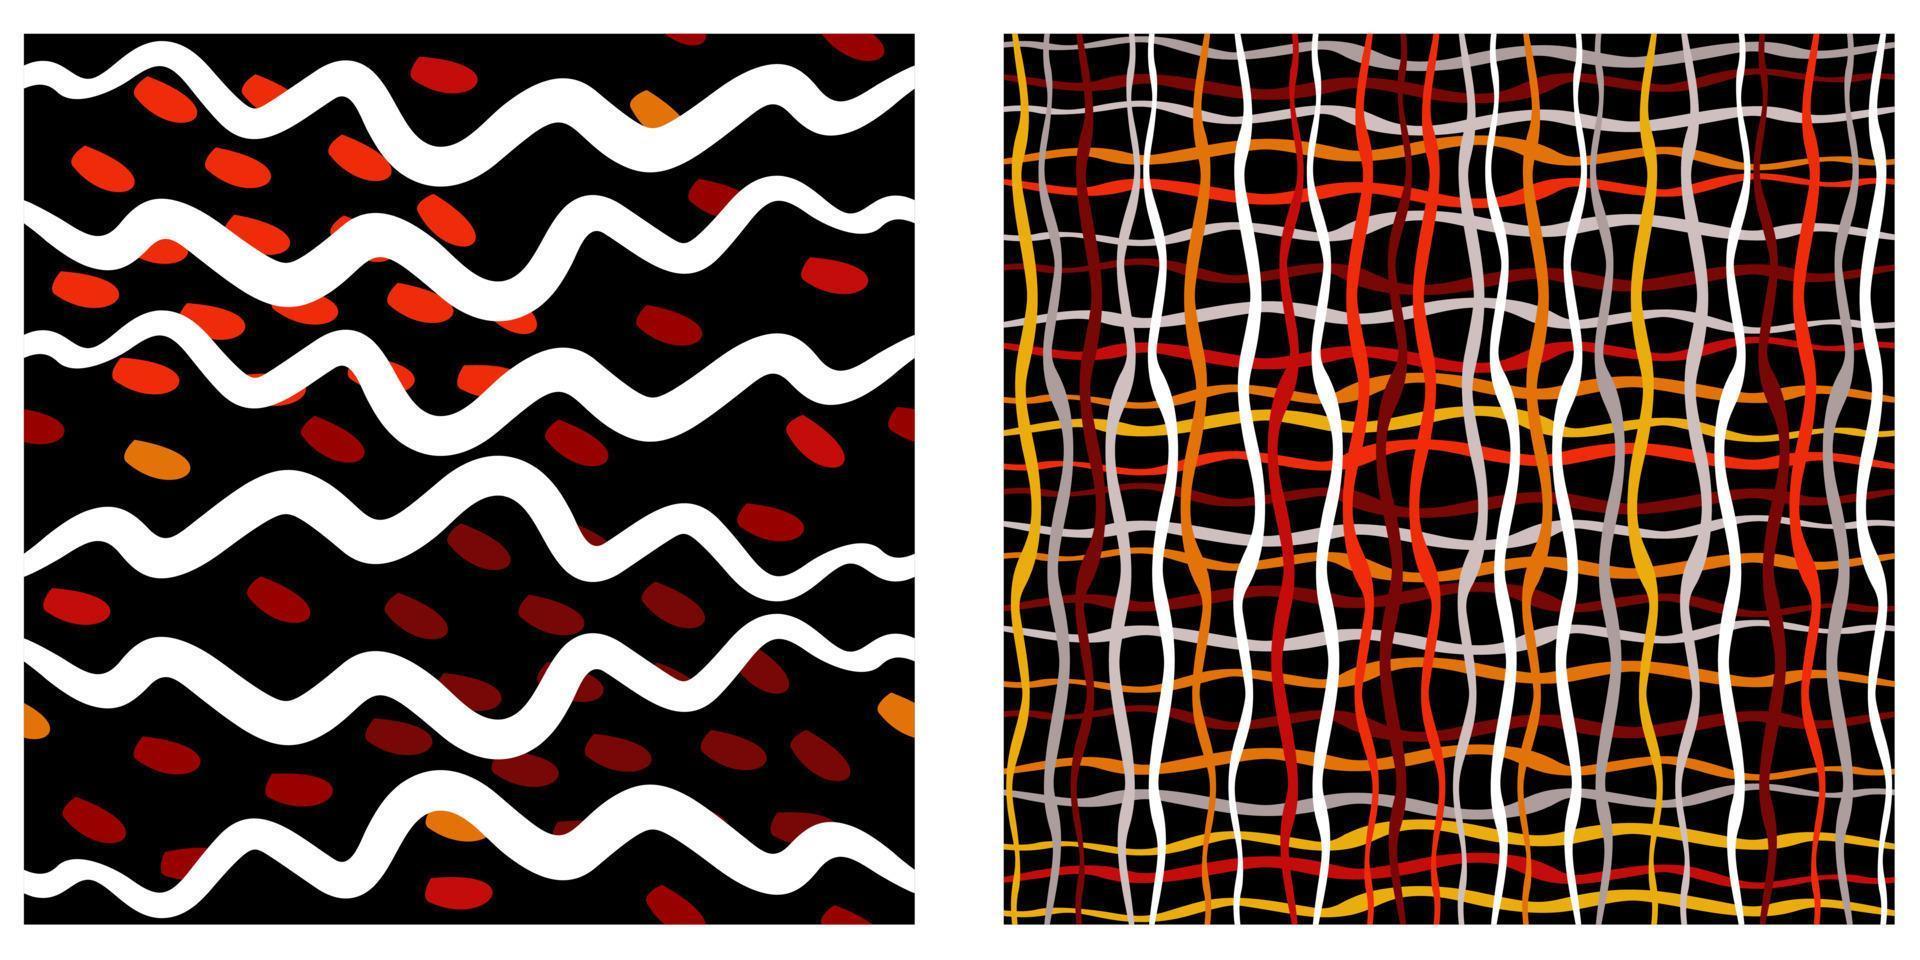 vektor uppsättning av två abstrakta mönster i svarta, vita och röda färger.